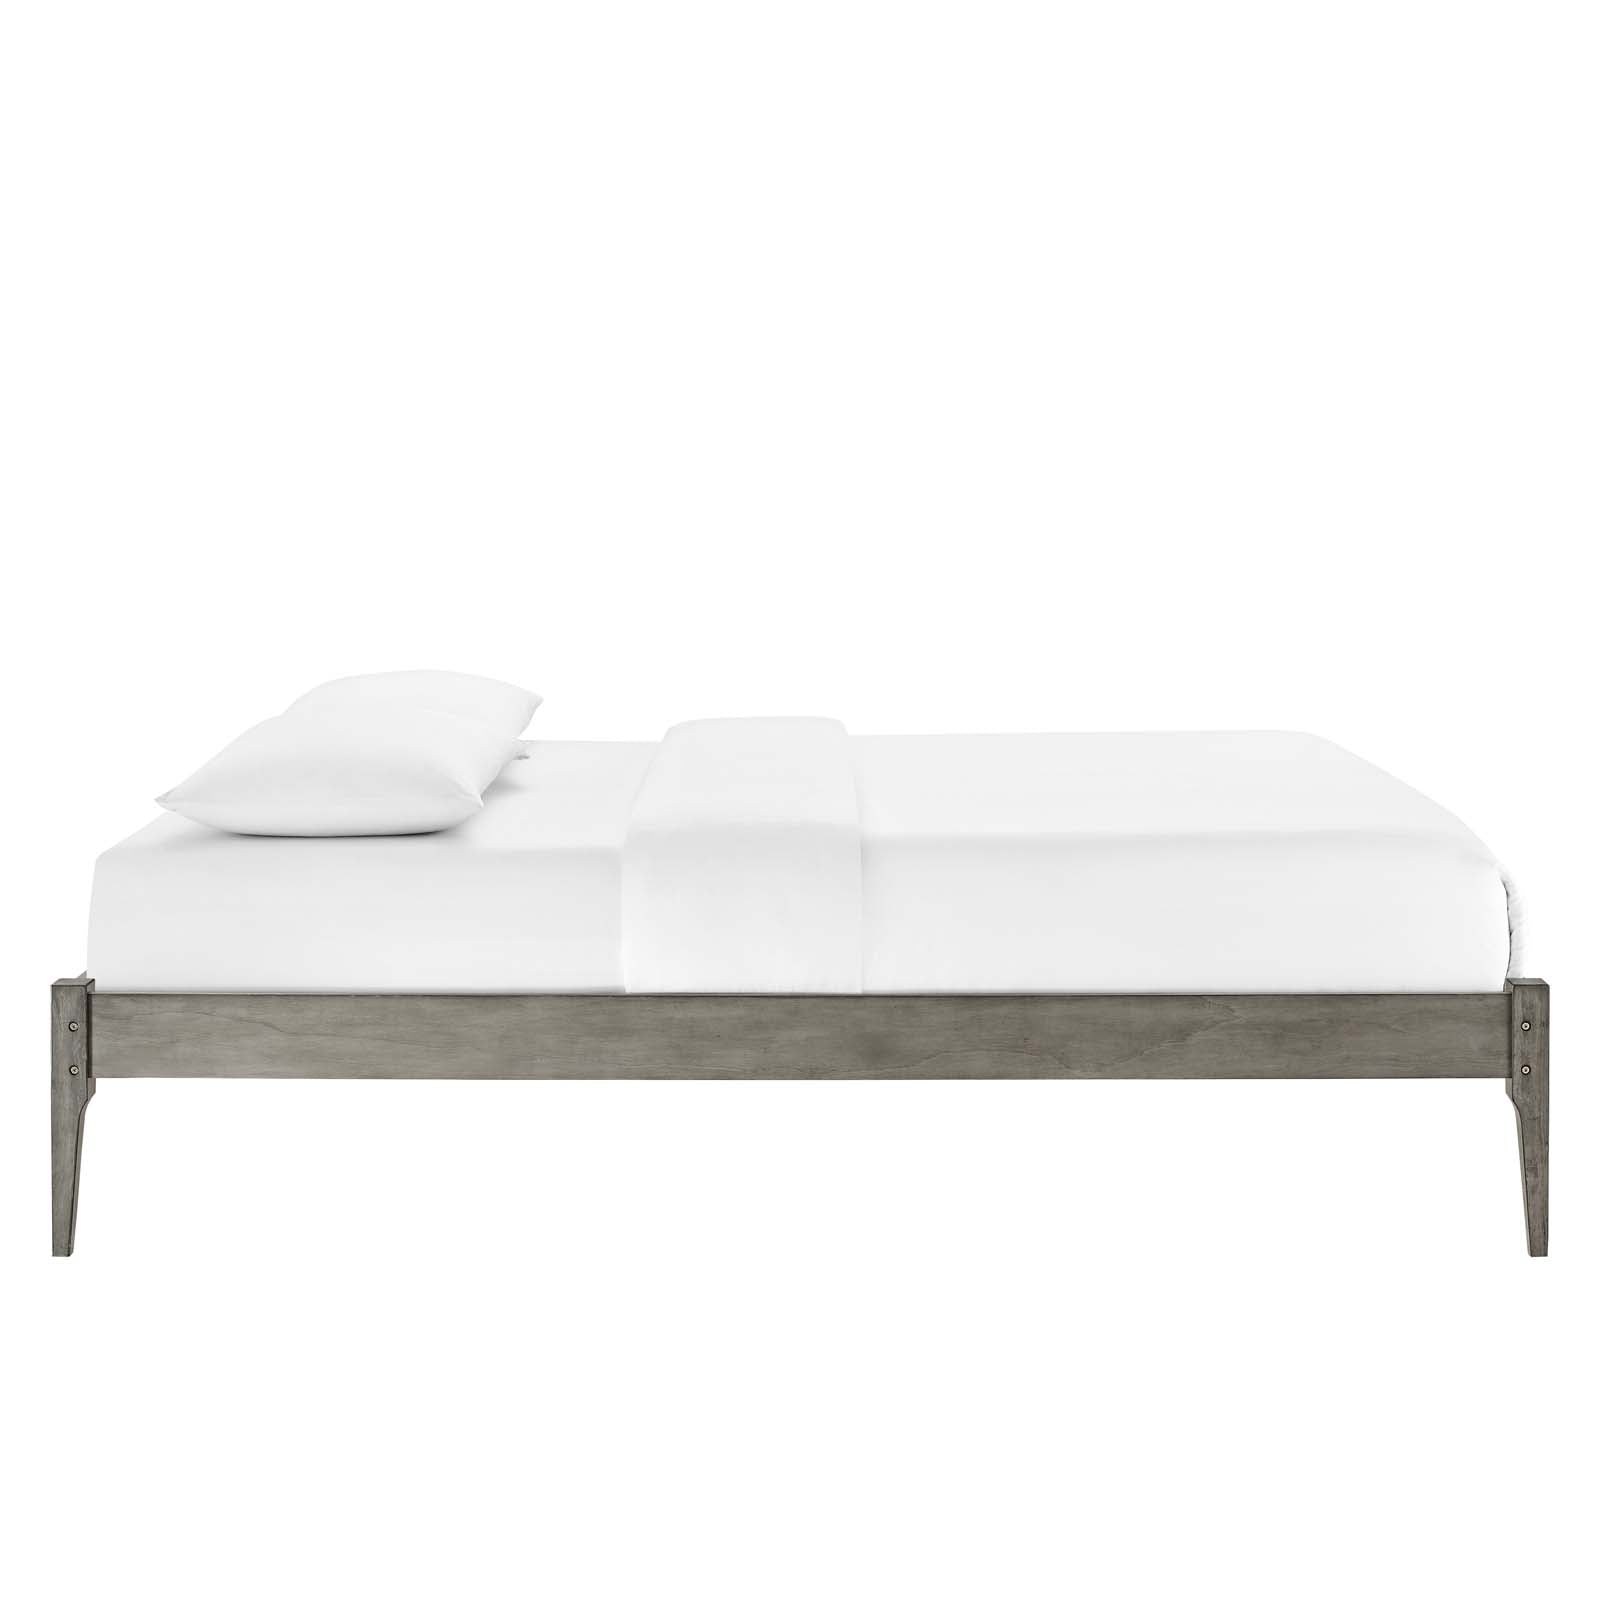 Modway Beds - June Full Wood Platform Bed Frame Gray